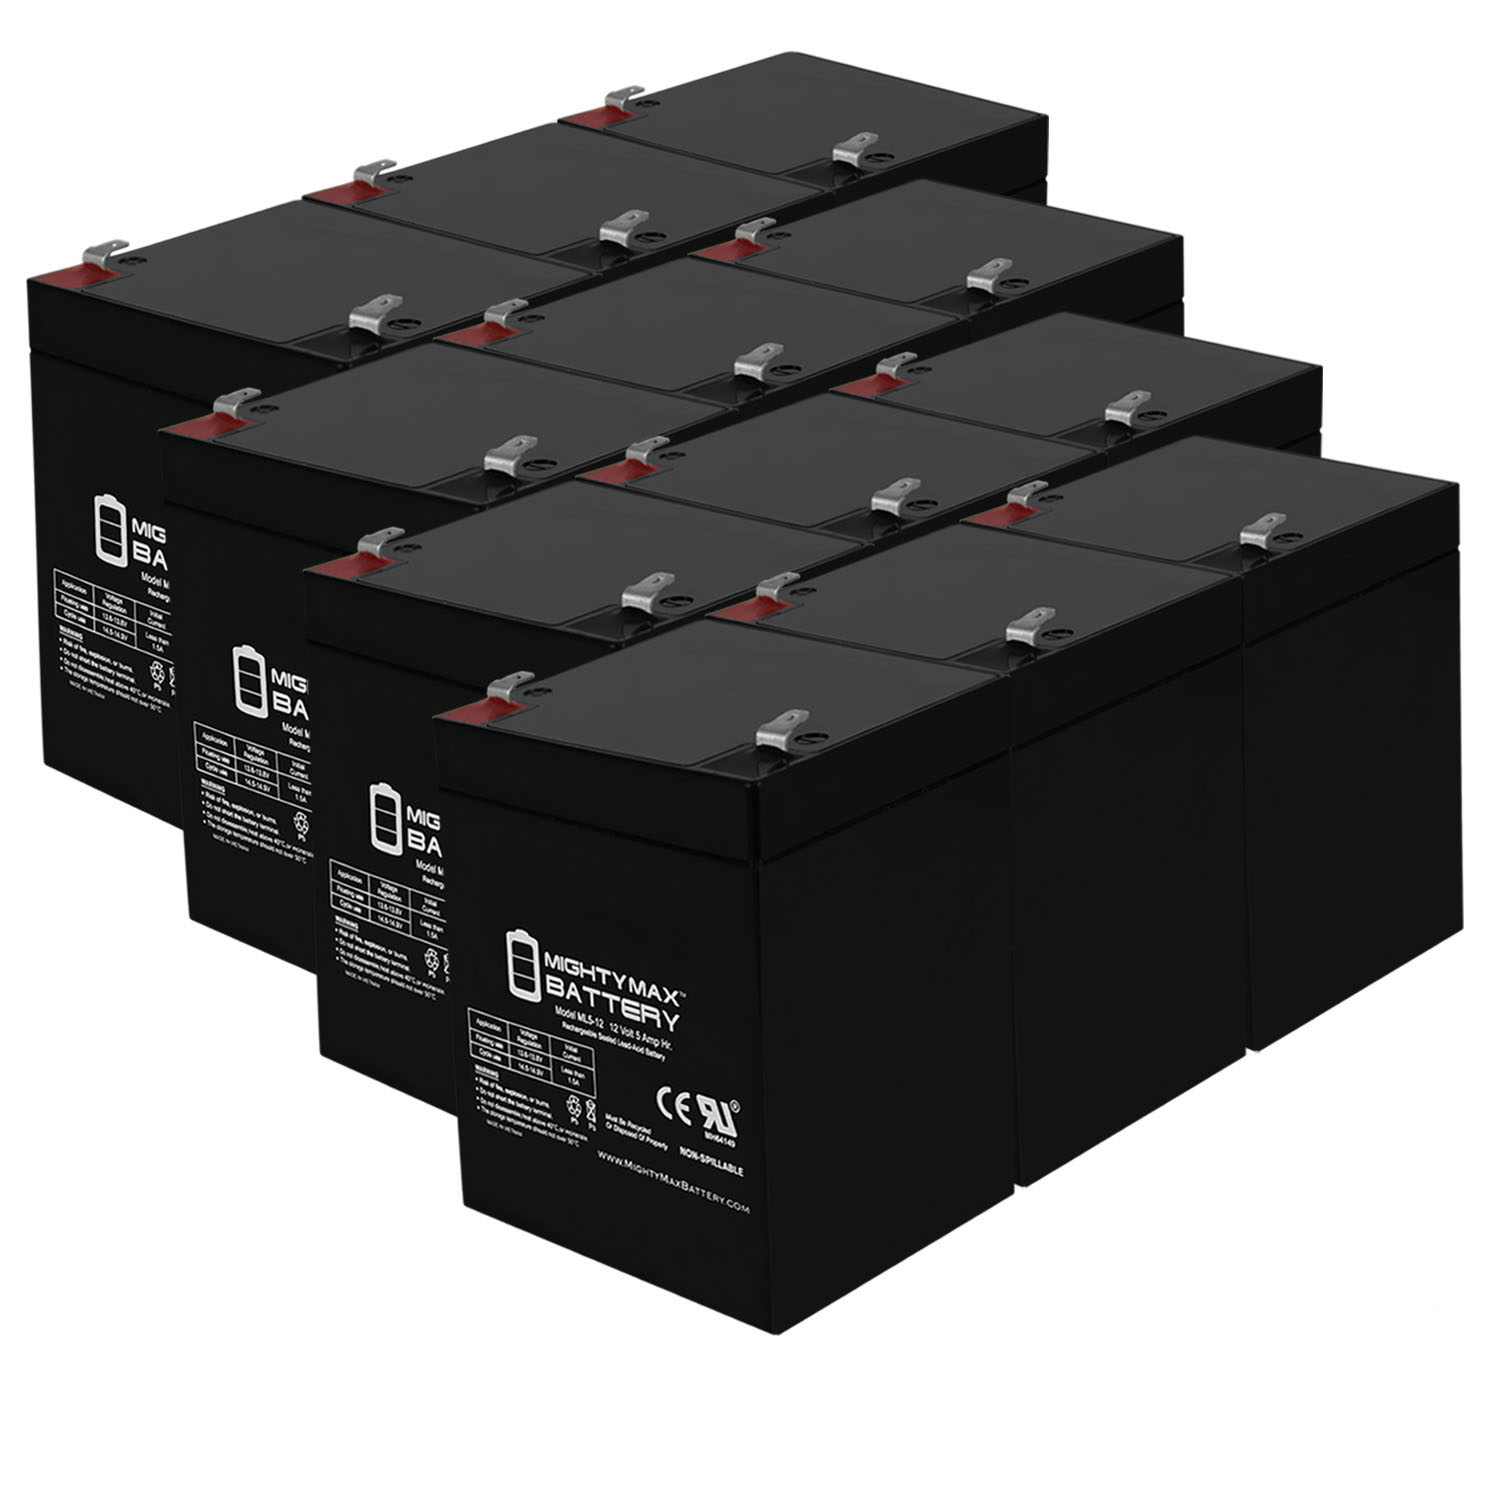 12V 5AH SLA Replacement Battery for Chamberlain 349544 - 12 Pack